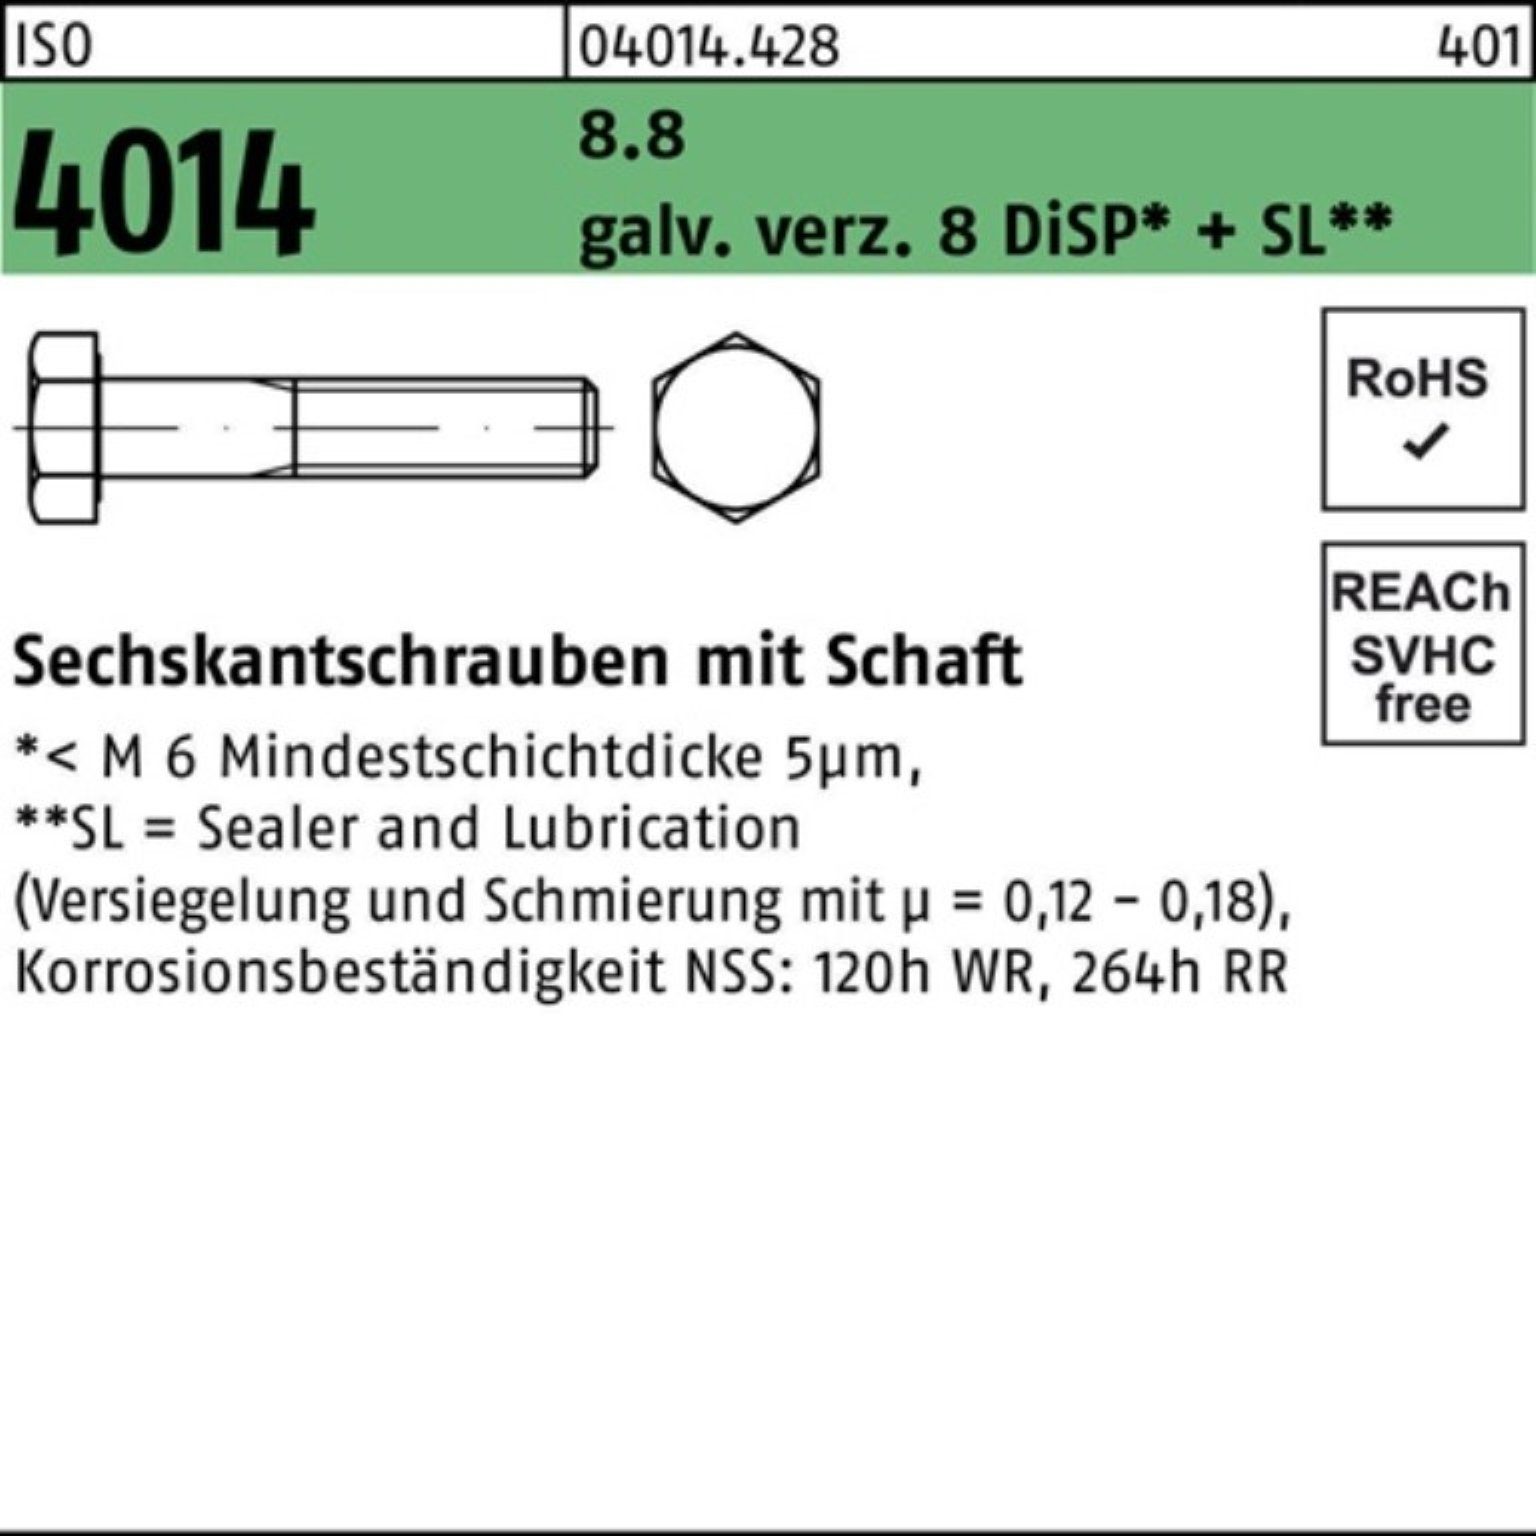 Bufab Sechskantschraube 8 Pack 8.8 100er 4014 Sechskantschraube galv.verz. M20x150 ISO Schaft